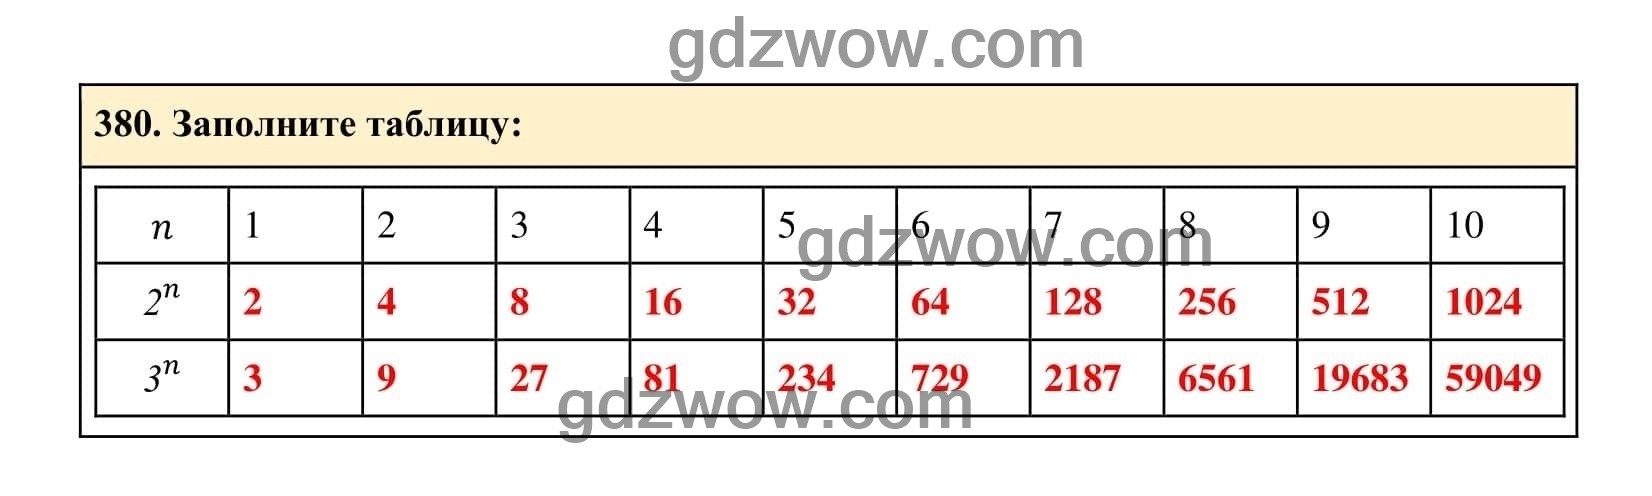 Упражнение 380 - ГДЗ по Алгебре 7 класс Учебник Макарычев (решебник) - GDZwow